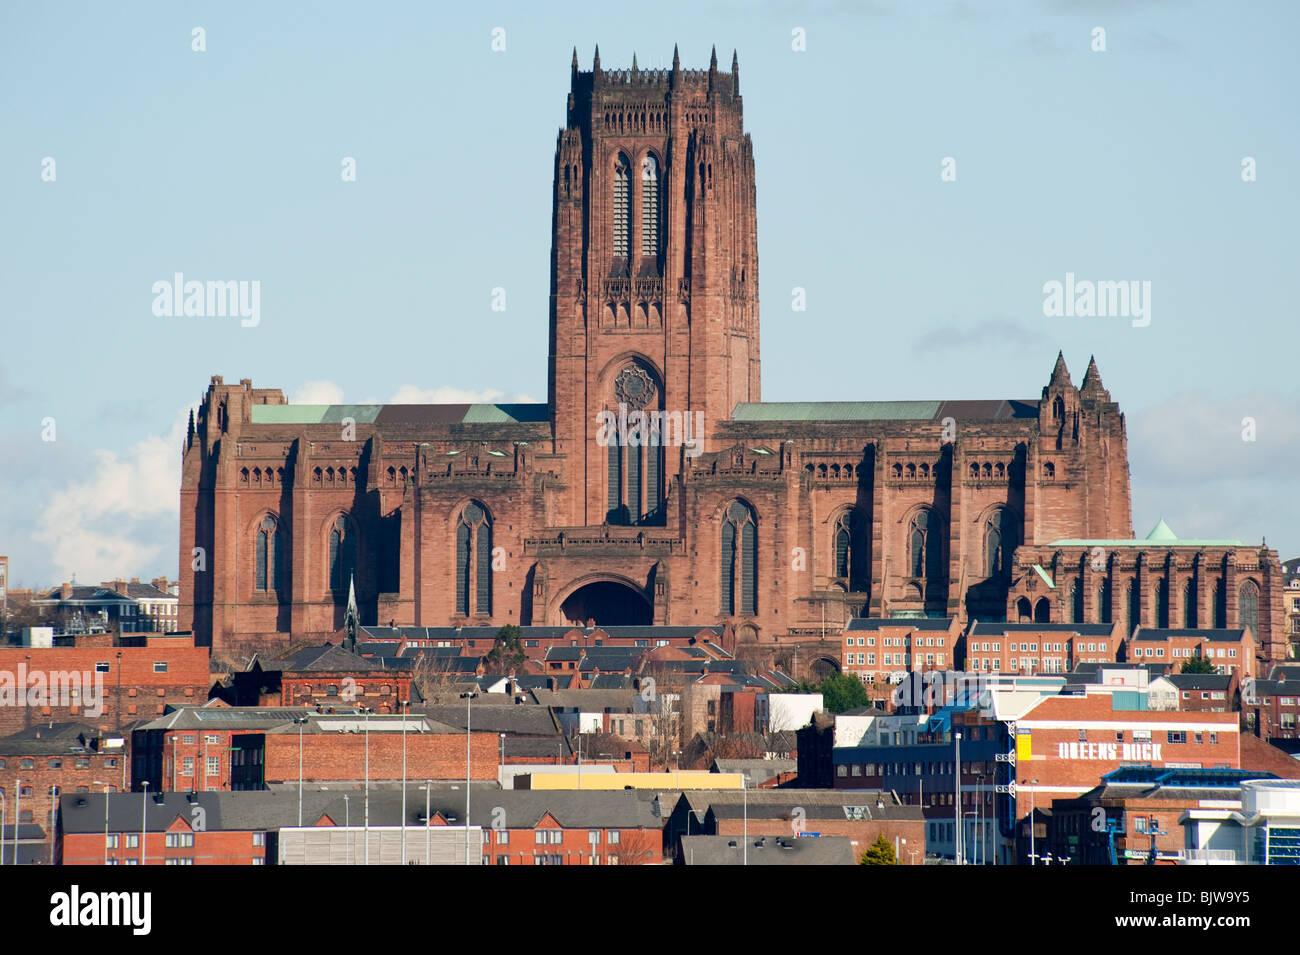 La cathédrale anglicane de Liverpool Merseyside UK Banque D'Images